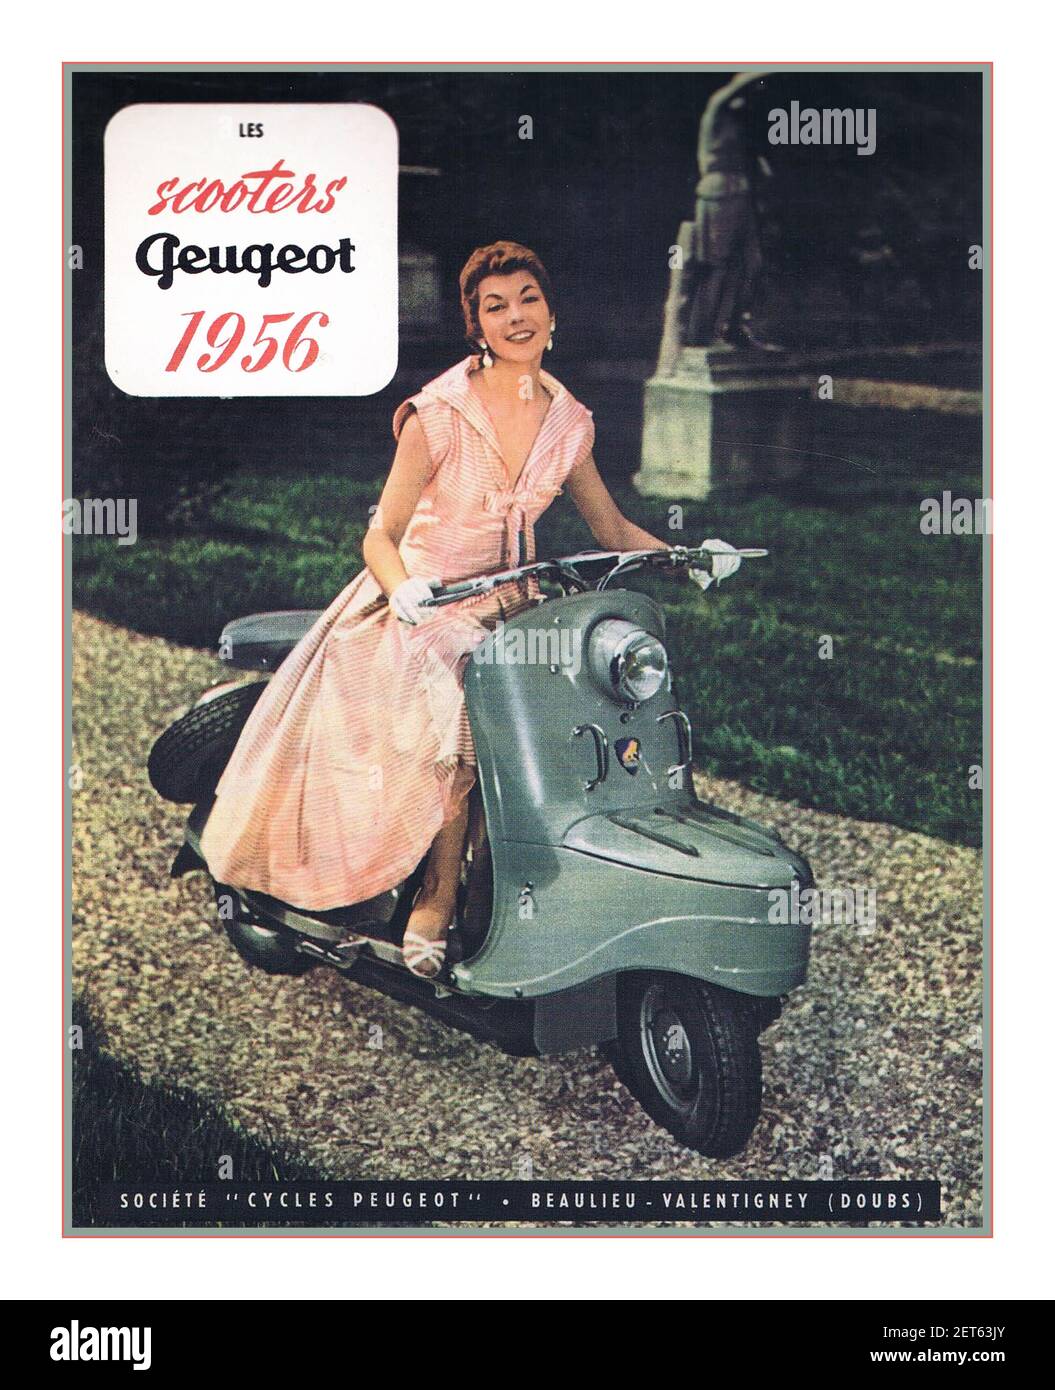 SCOOTER PEUGEOT 1956 Francia poster stile di vita vintage per gli scooter francesi degli anni '50 di Peugeot Francia. Stile di vita. Francia Trasporti Foto Stock